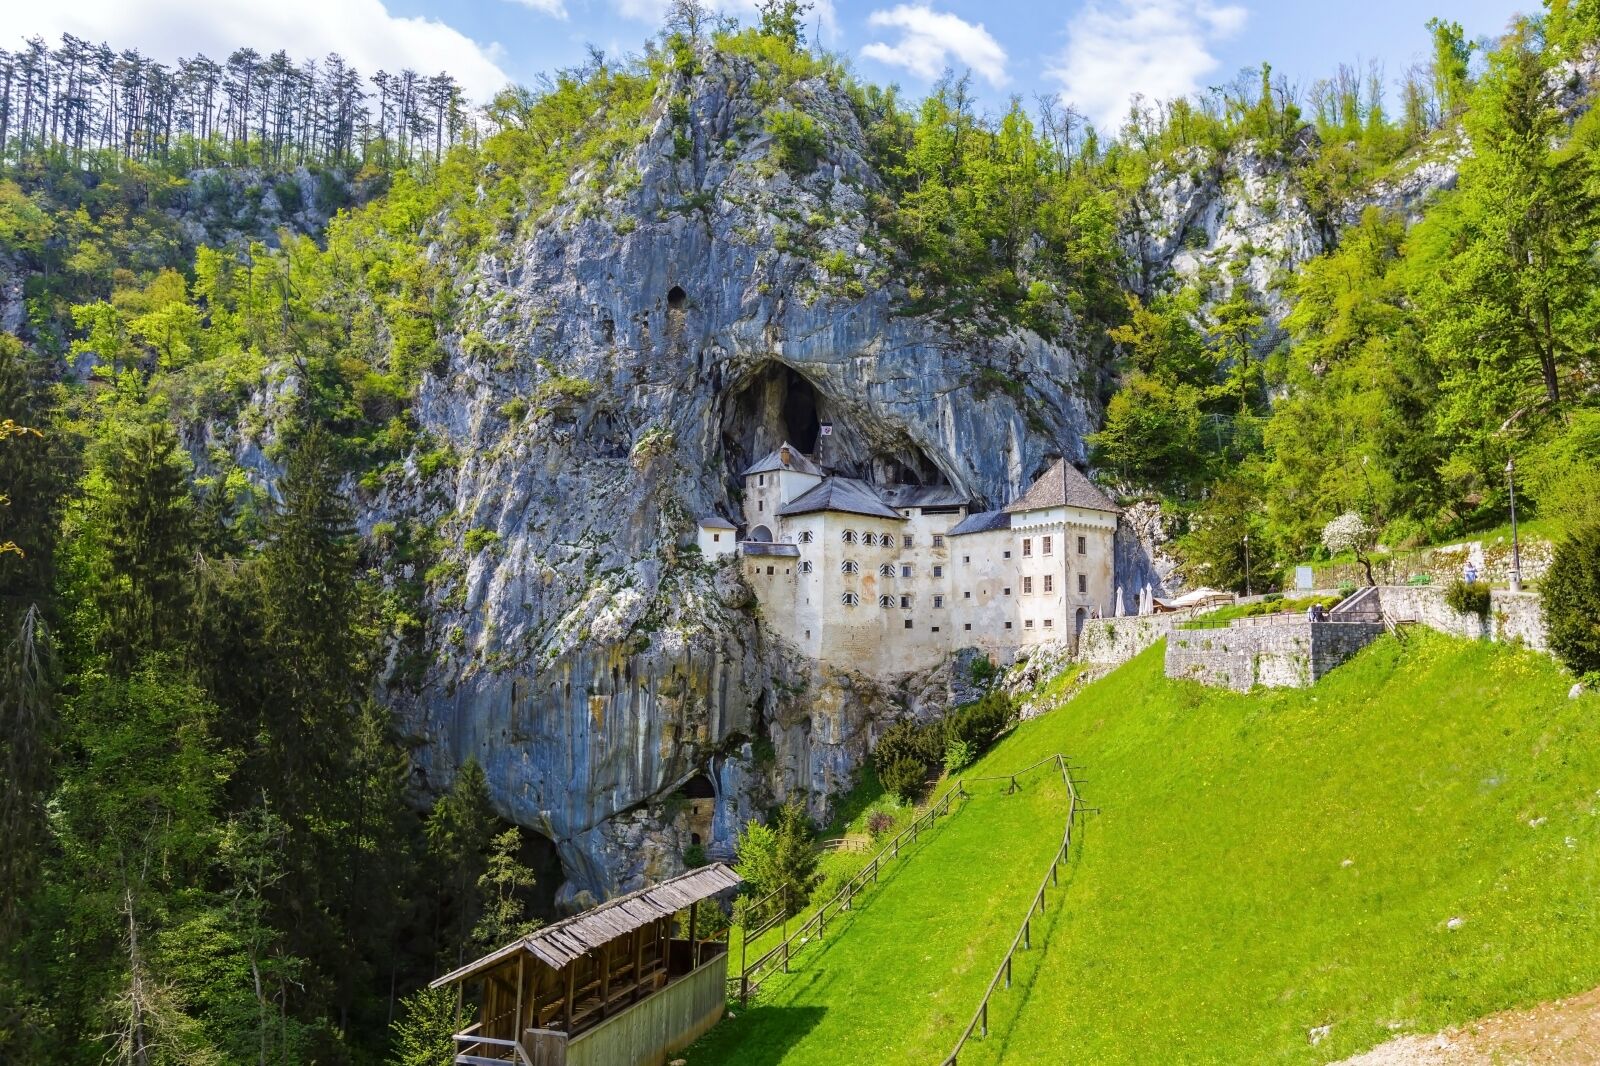 Predjama; castle at the cave mouth in Postojna Cave, Slovenia in springtime